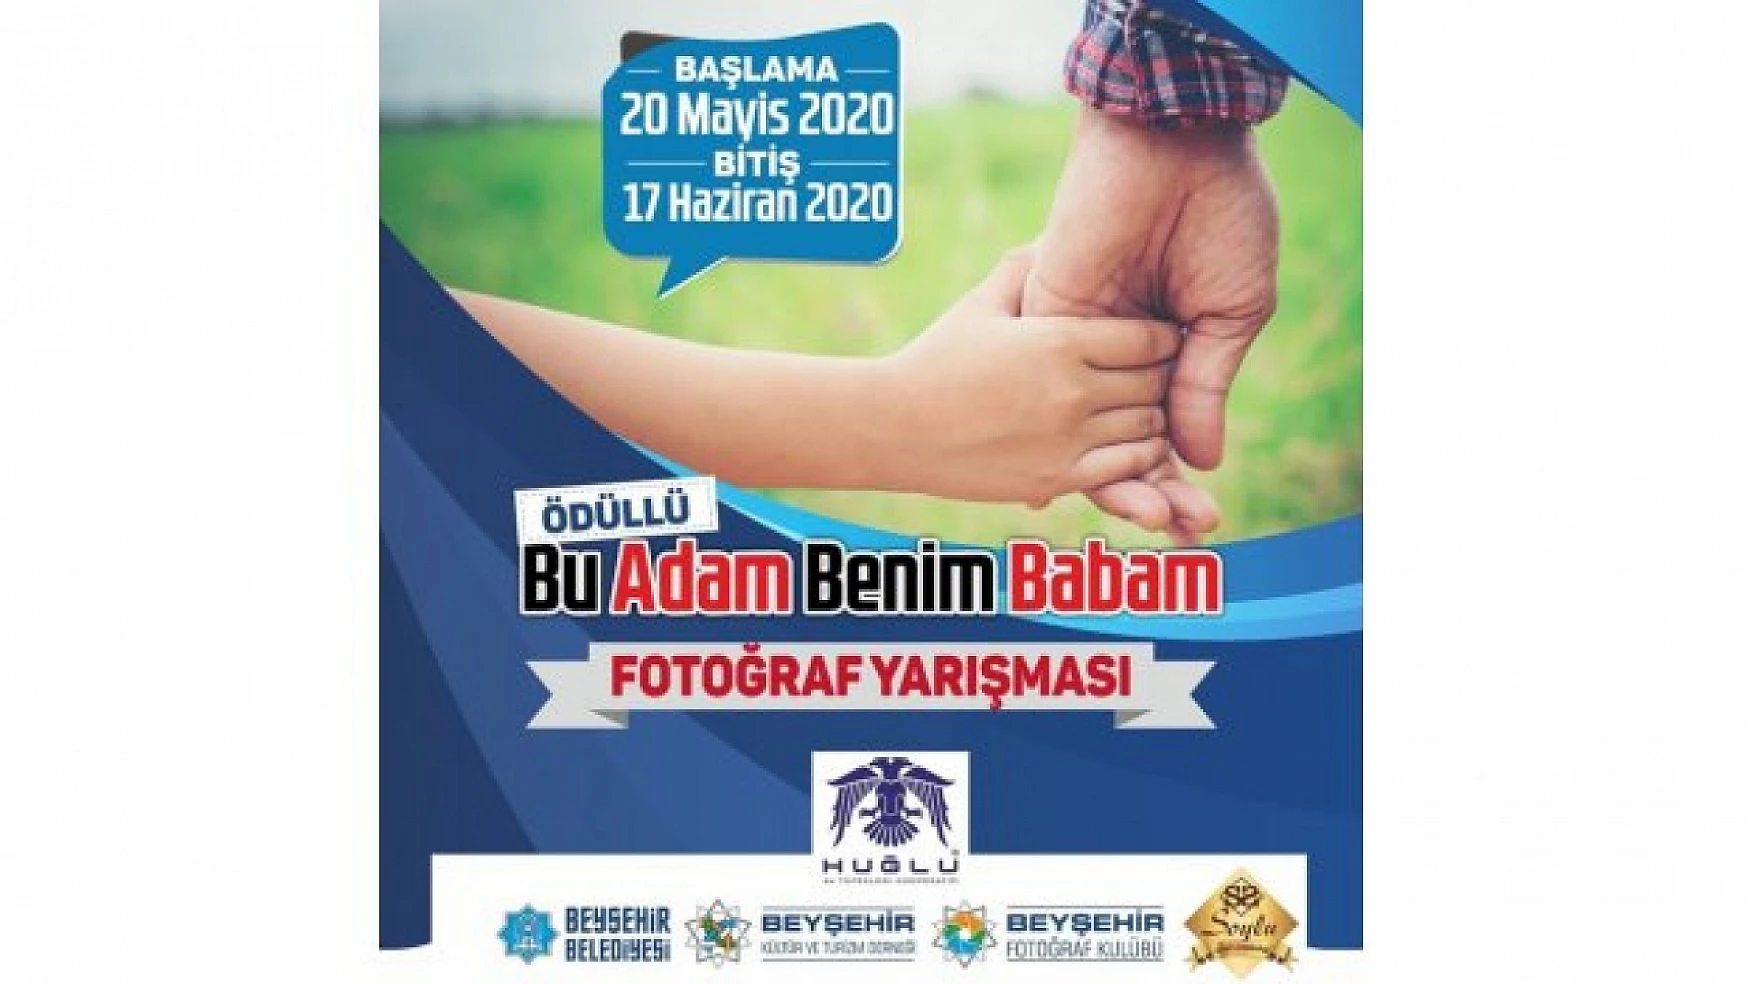 Beyşehir'de yarışma düzenlenecek